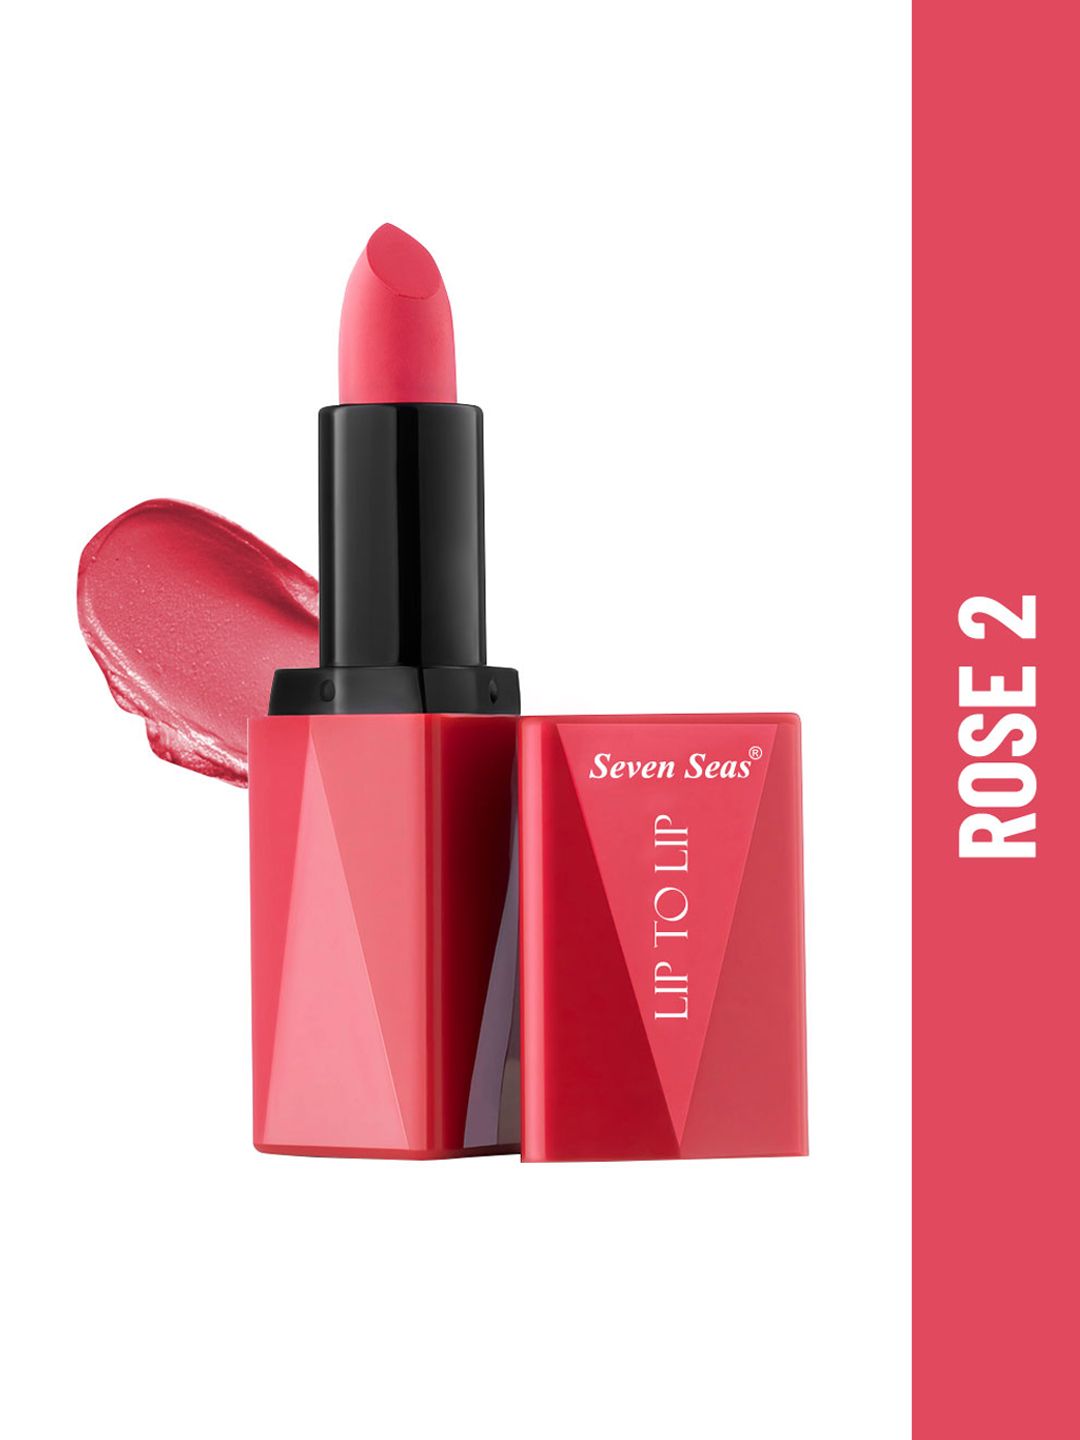 Seven Seas Lip To Lip Matte Lipstick, 3.8 gm - Rose 2 Price in India